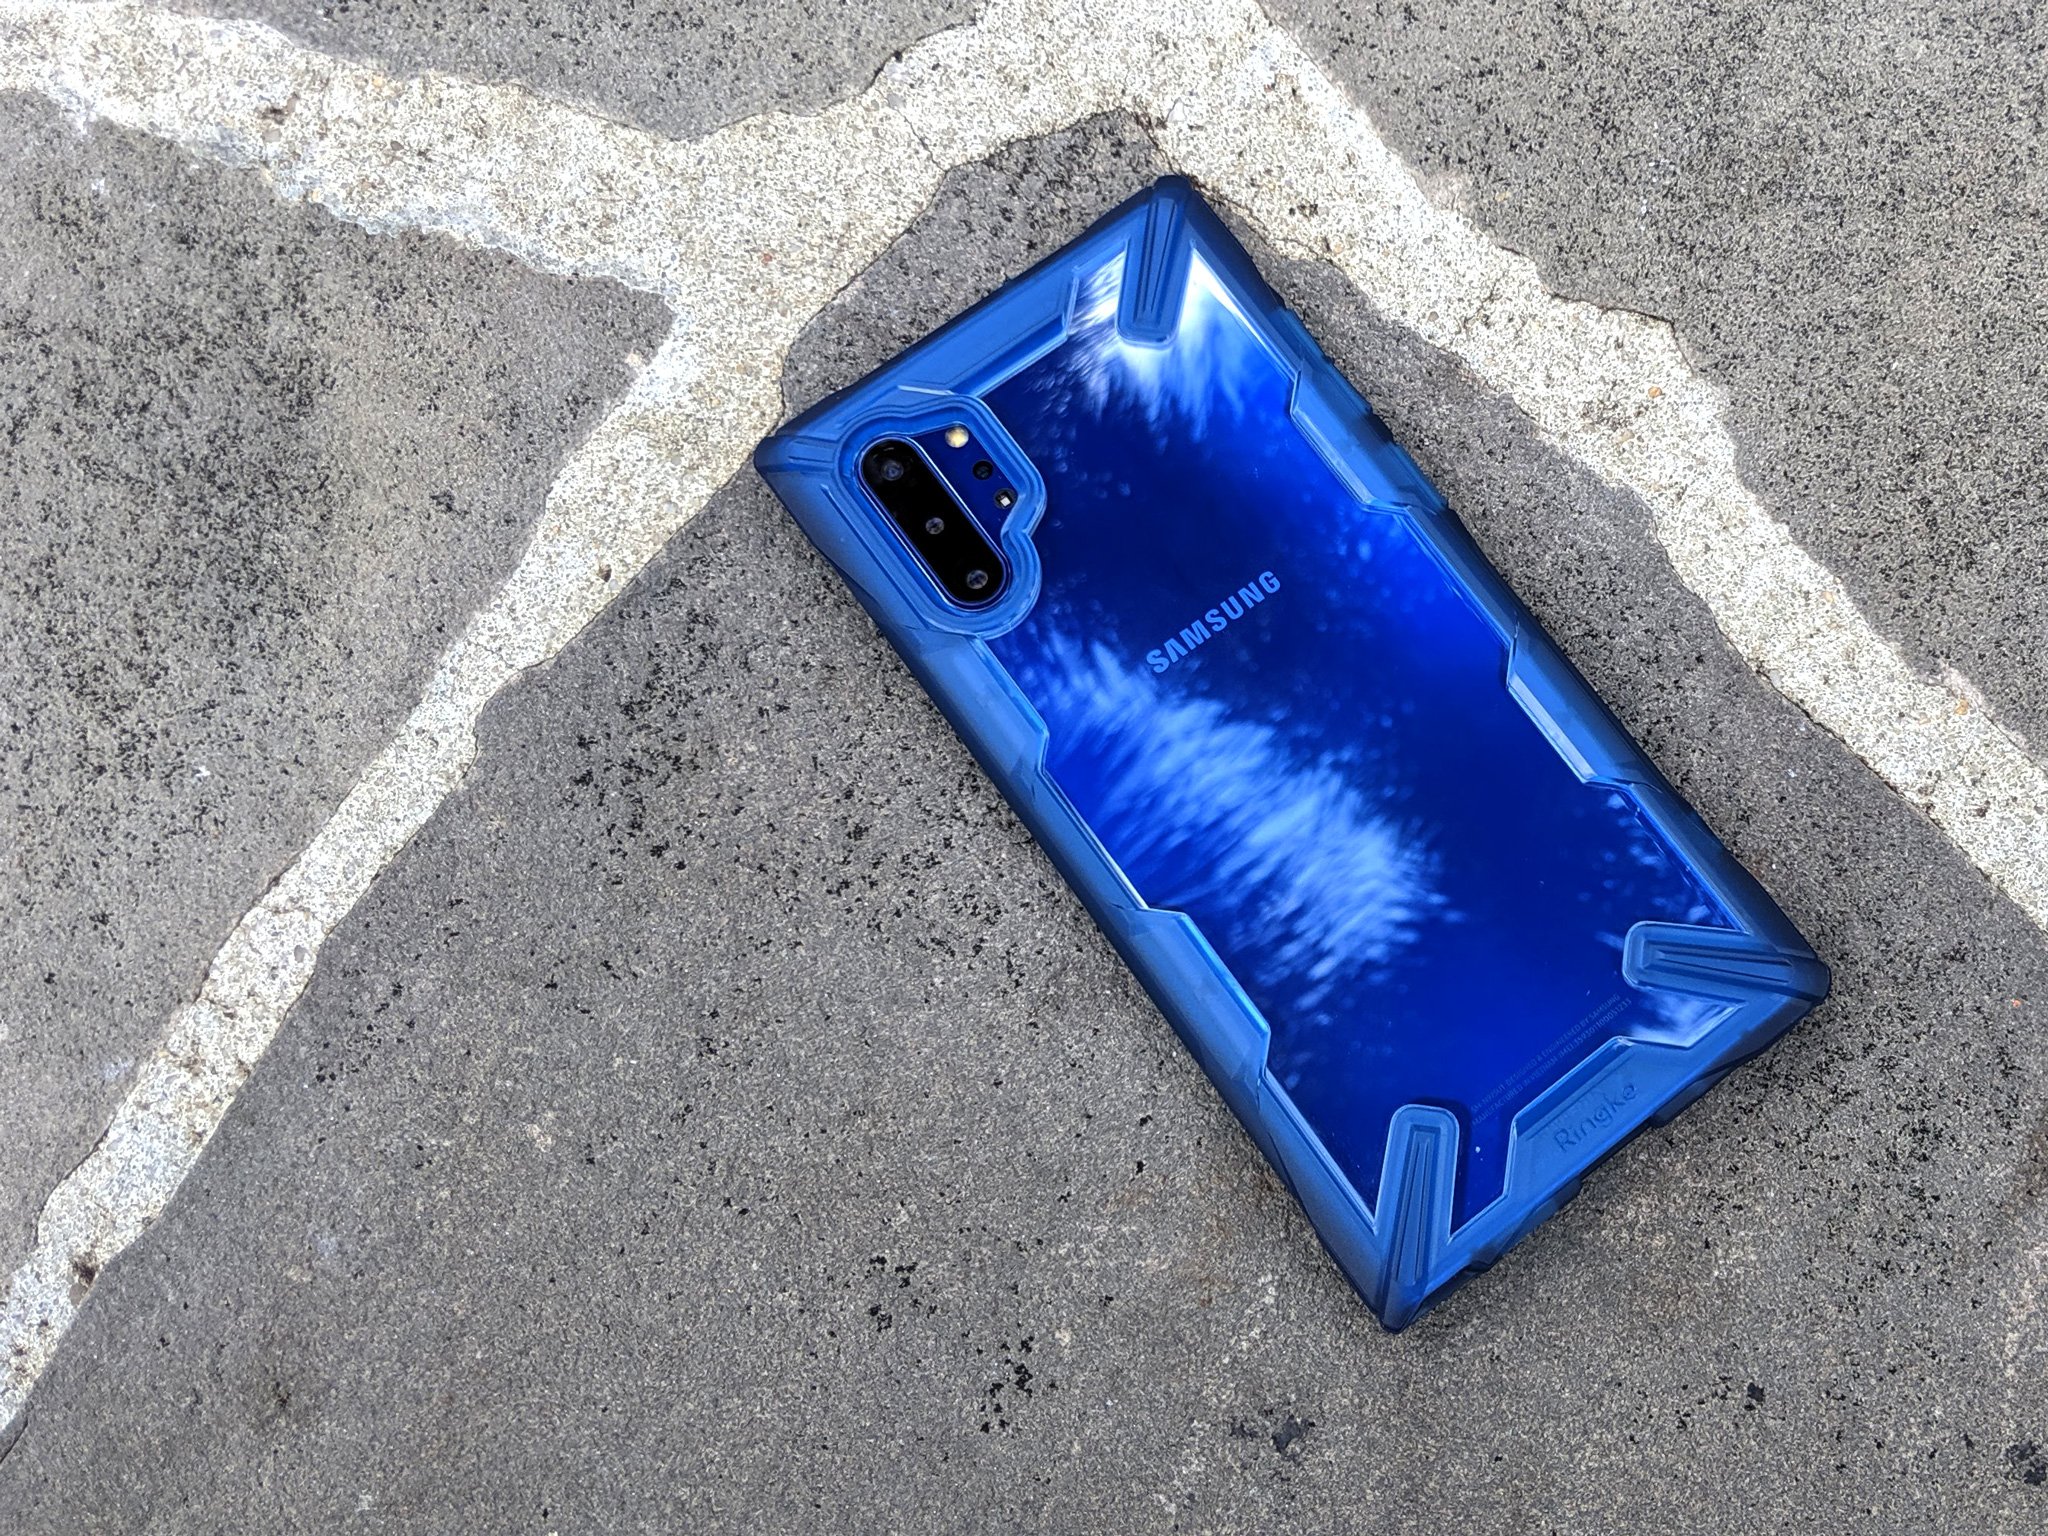 Ringke Fusion-X Galaxy Note 10+ استعراض القضية: حالة واضحة يمكن أن تذهب المسافة 203